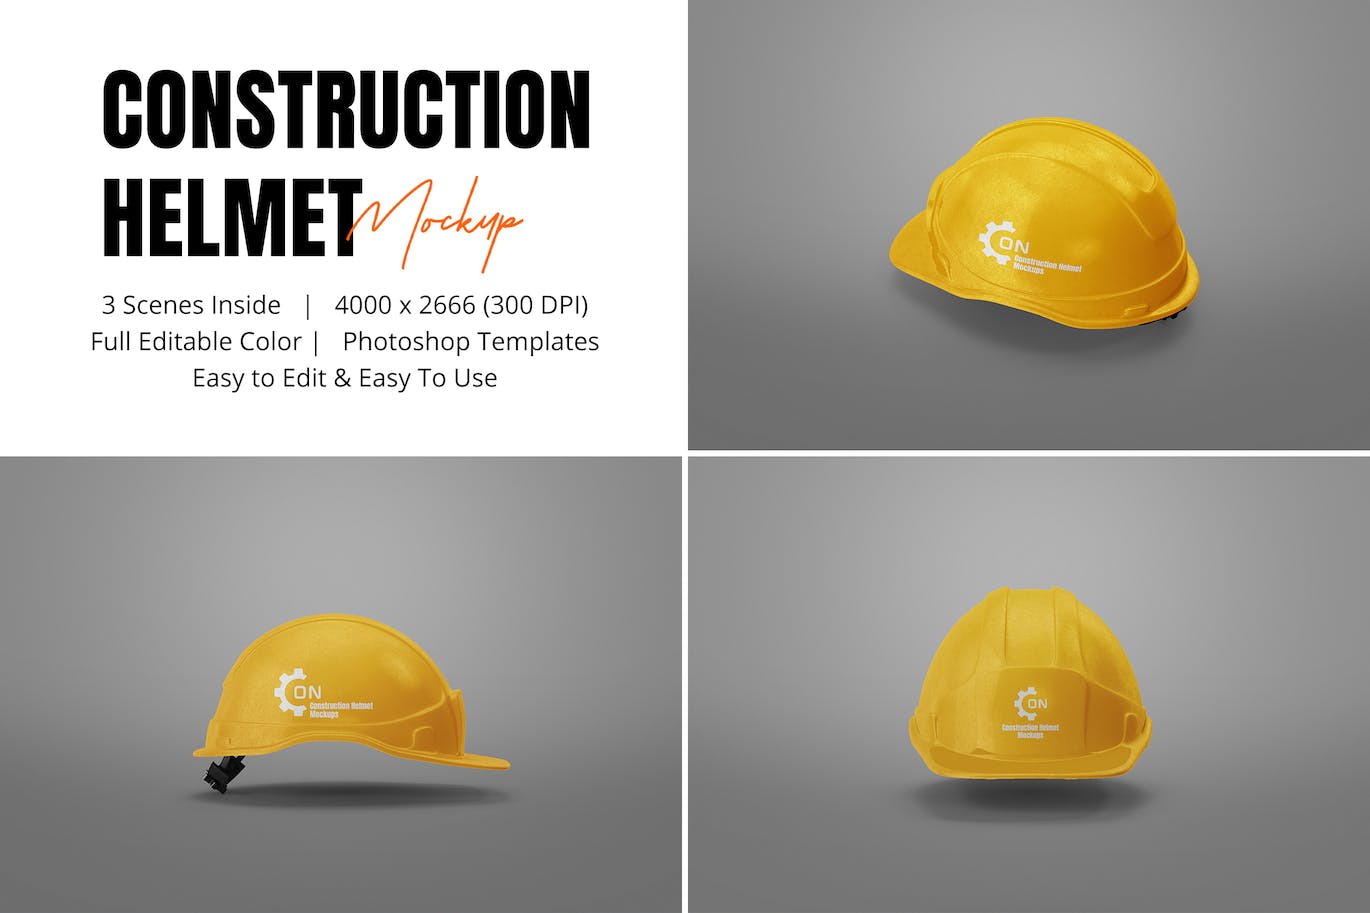 施工安全头盔品牌设计样机 Construction Helmet Mockup 样机素材 第1张